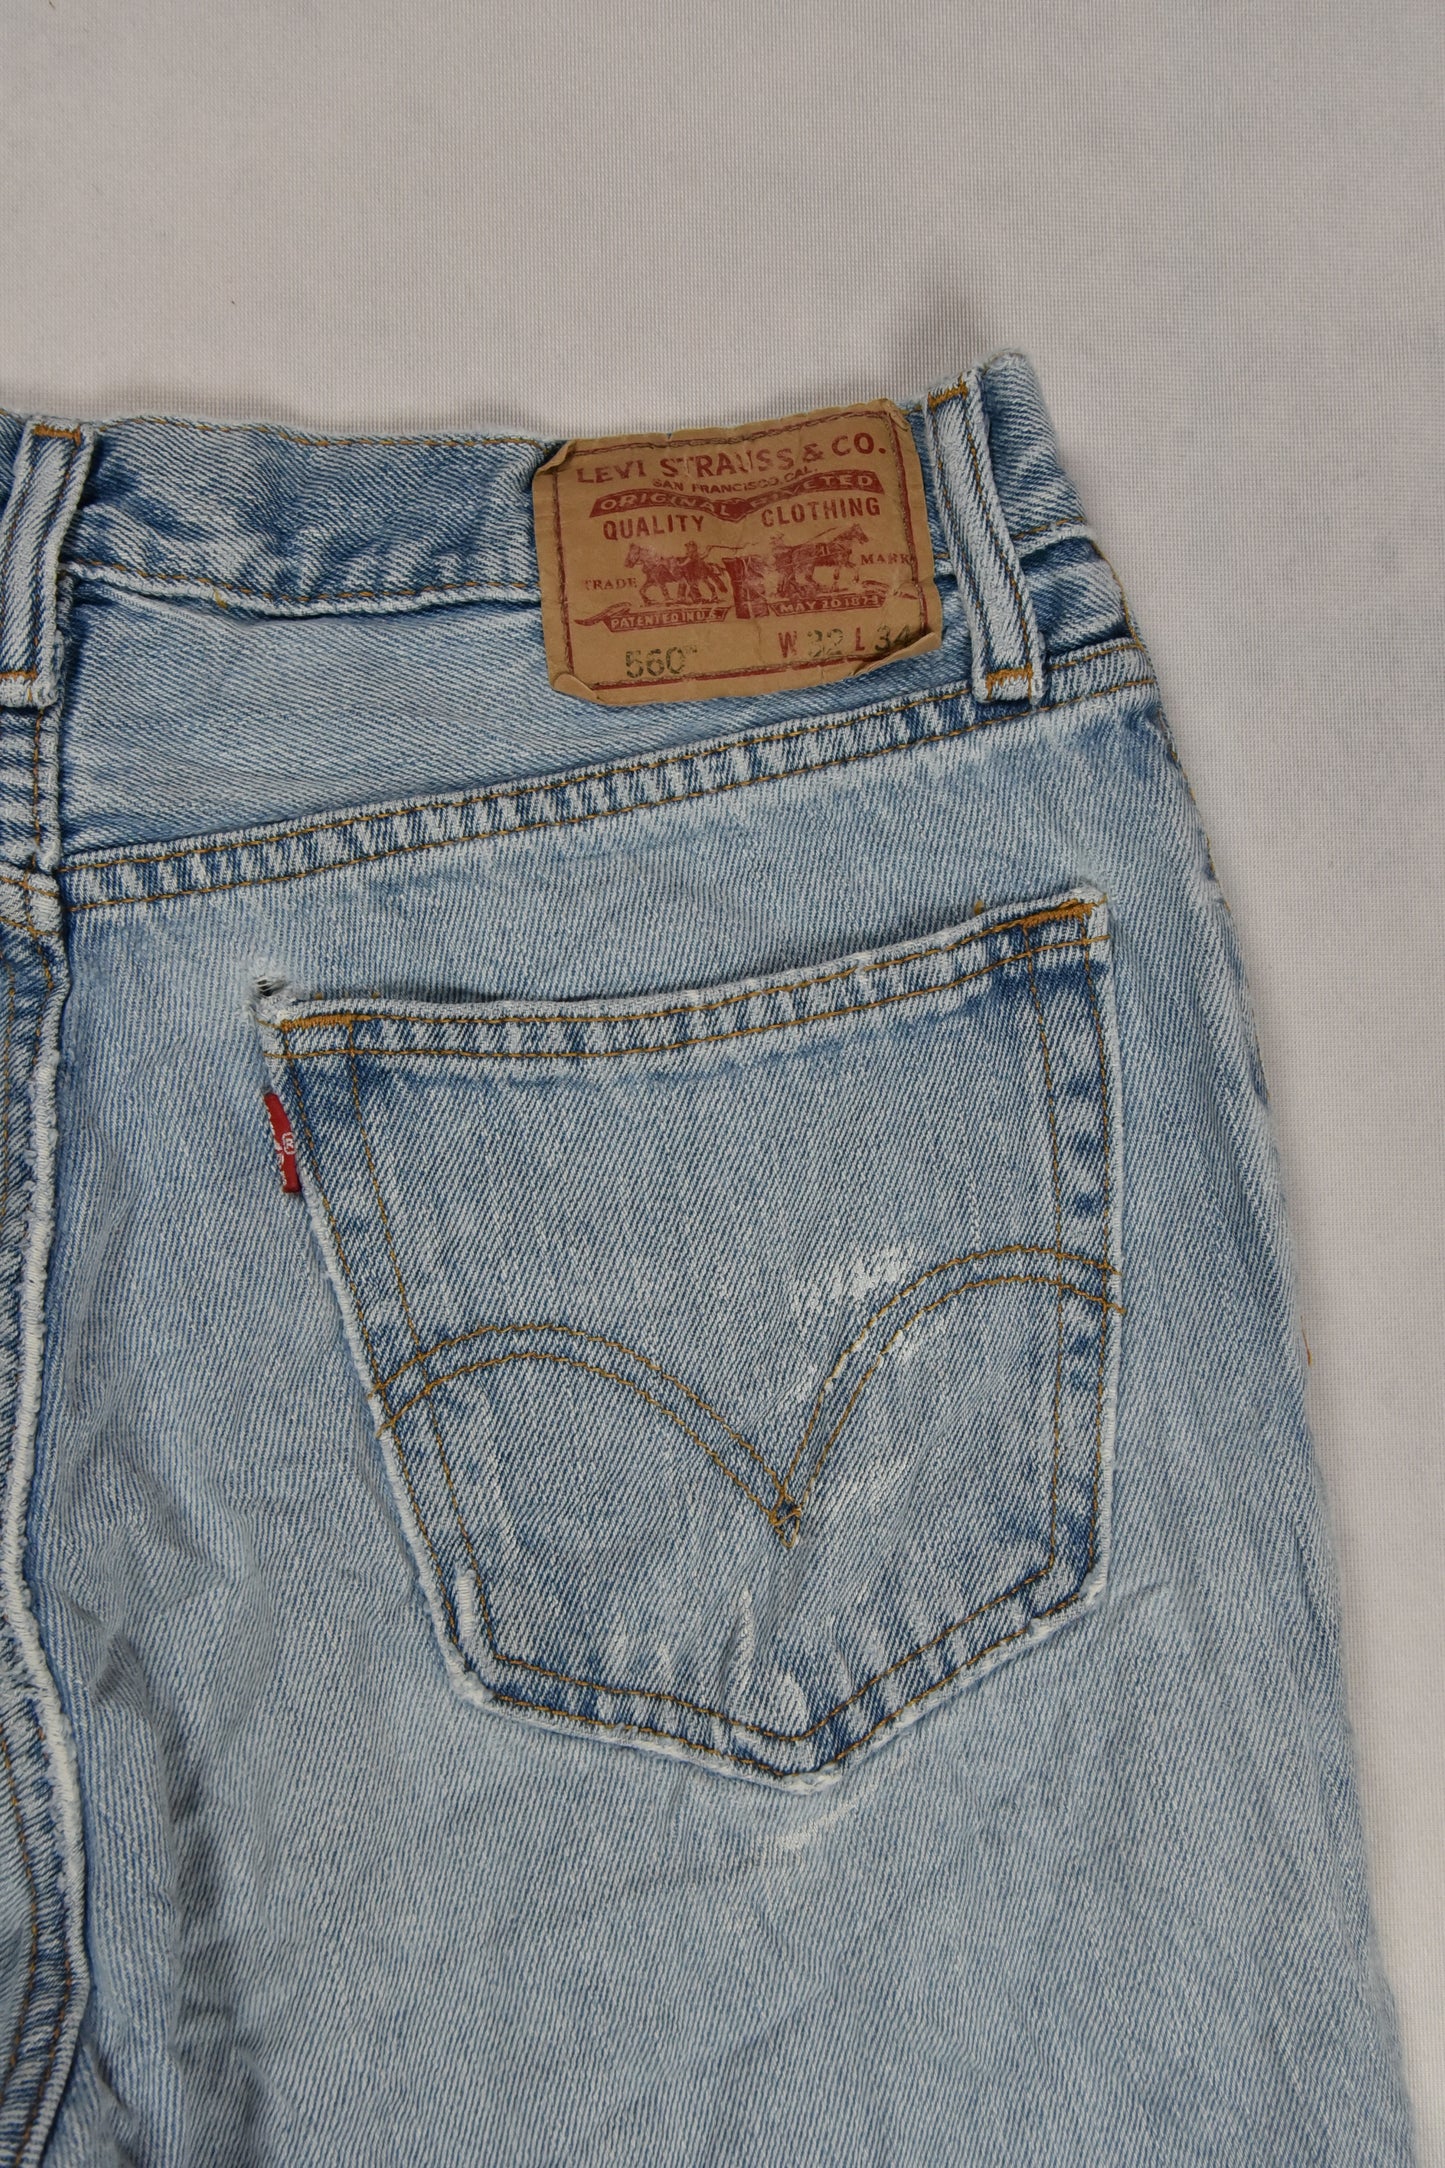 Levi's 560 short jeans vintage / 32